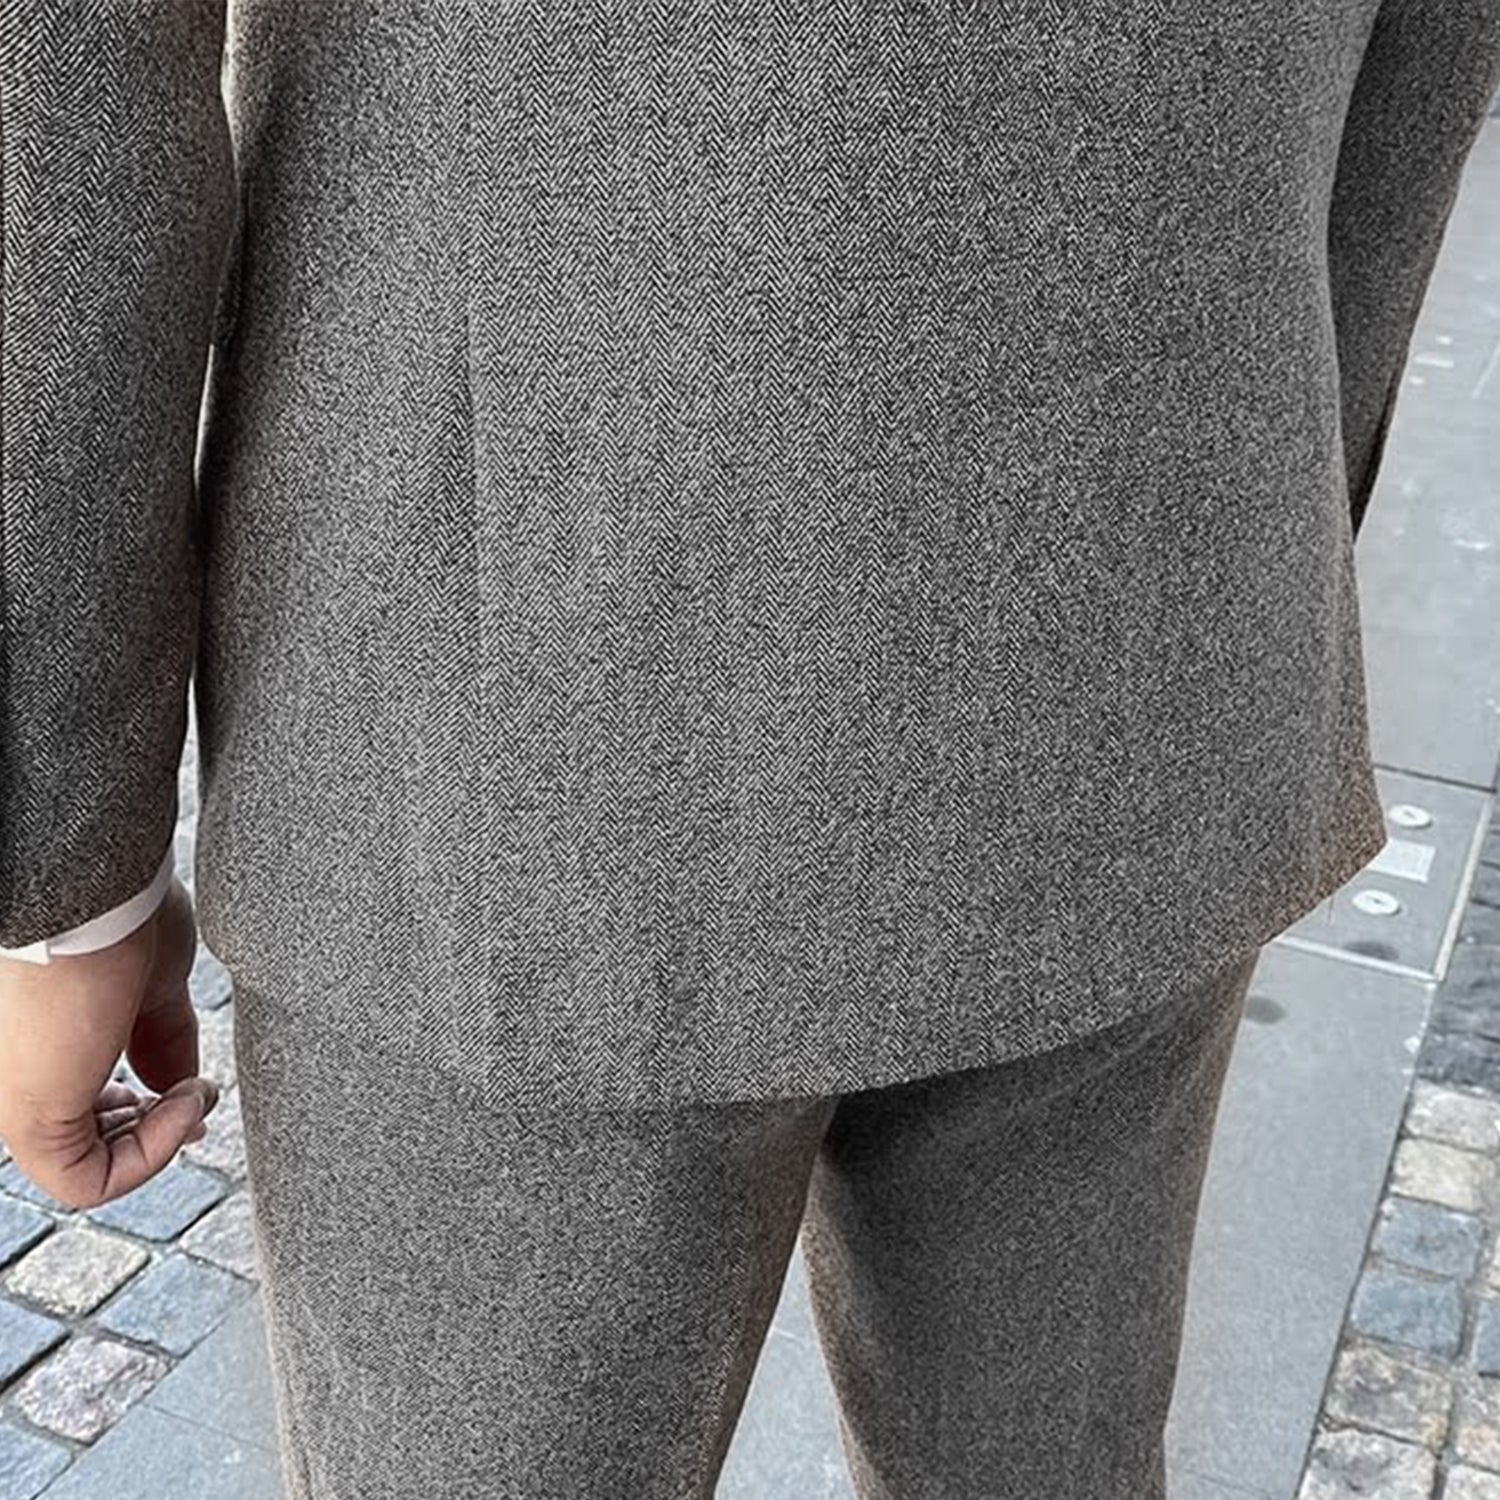 2 Pieces Double Breasted Herringbone Tweed Suit